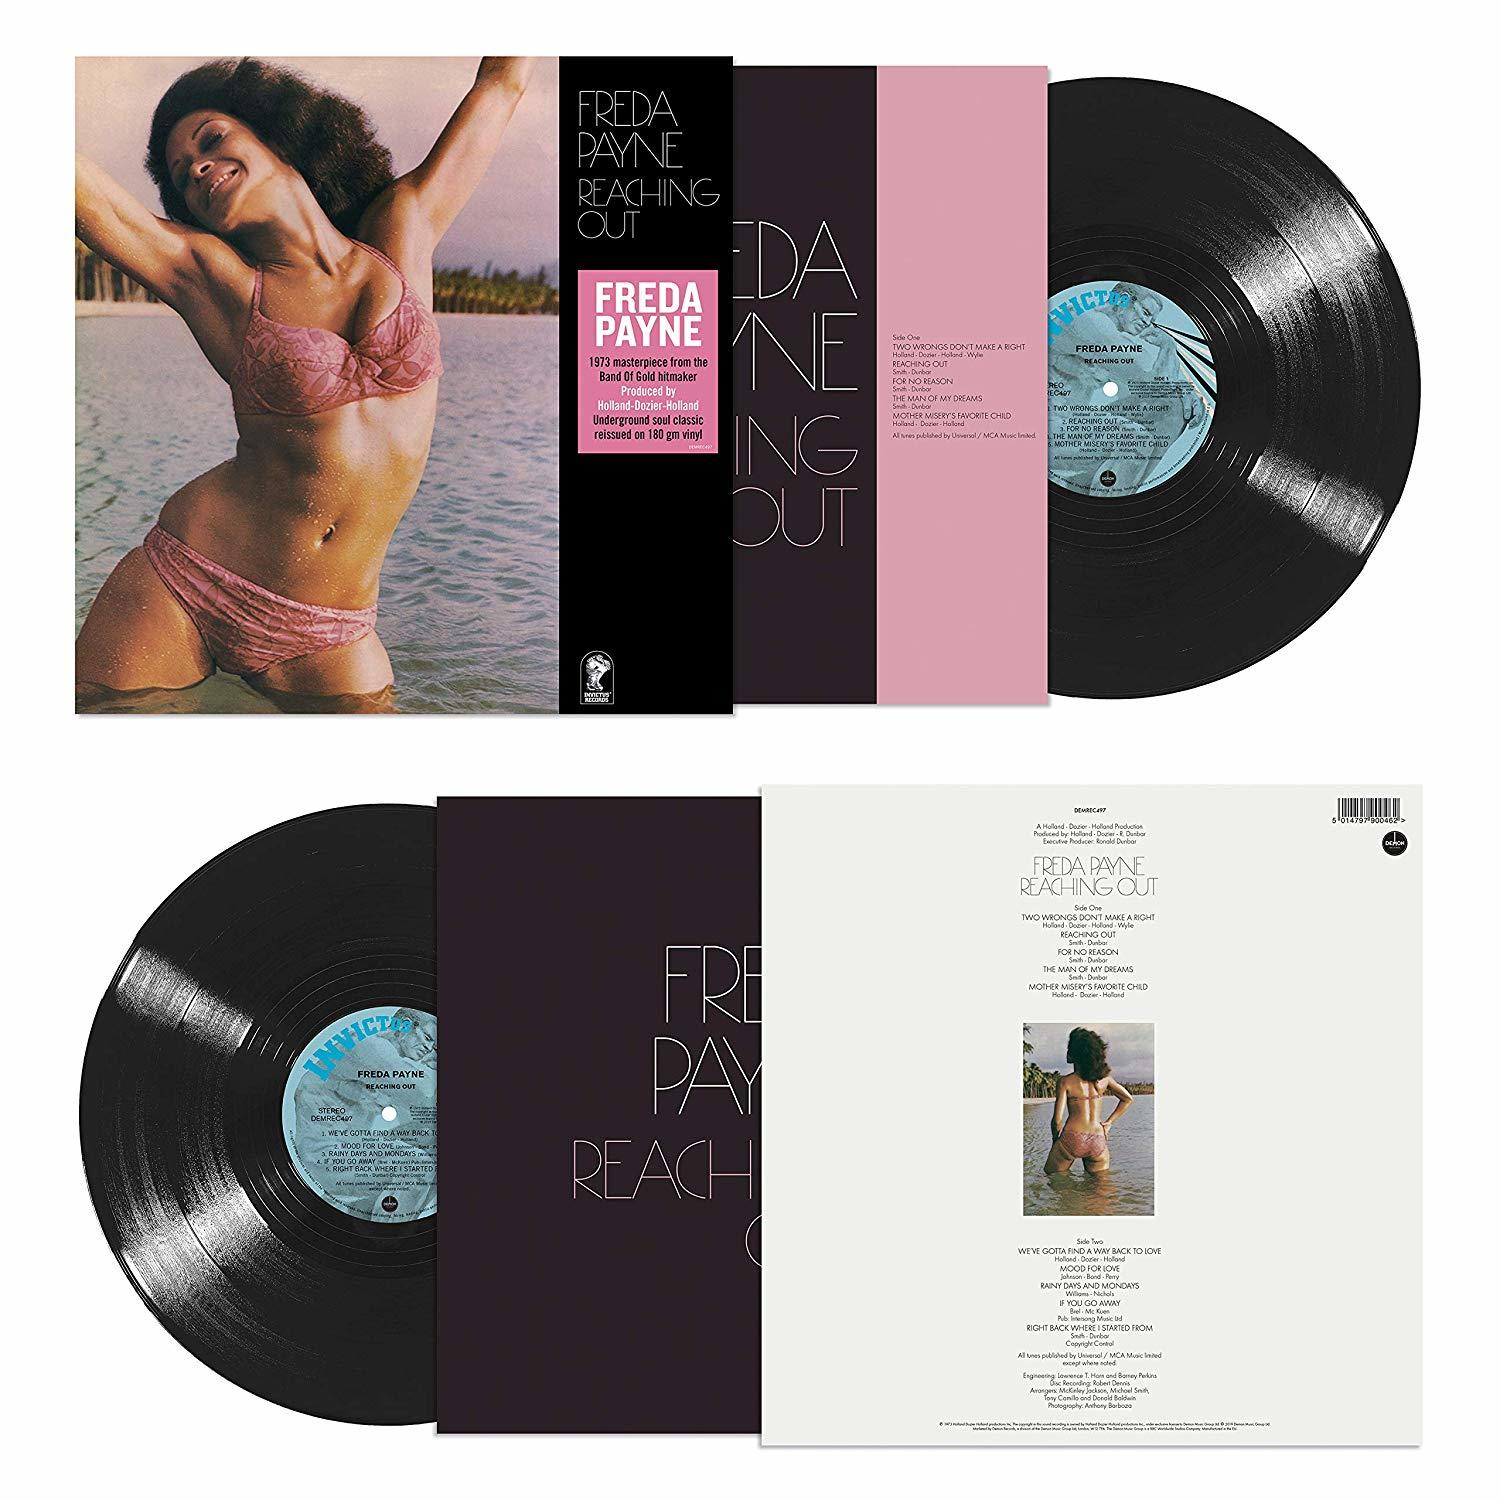 Freda Payne - Reaching out - (Vinyl)